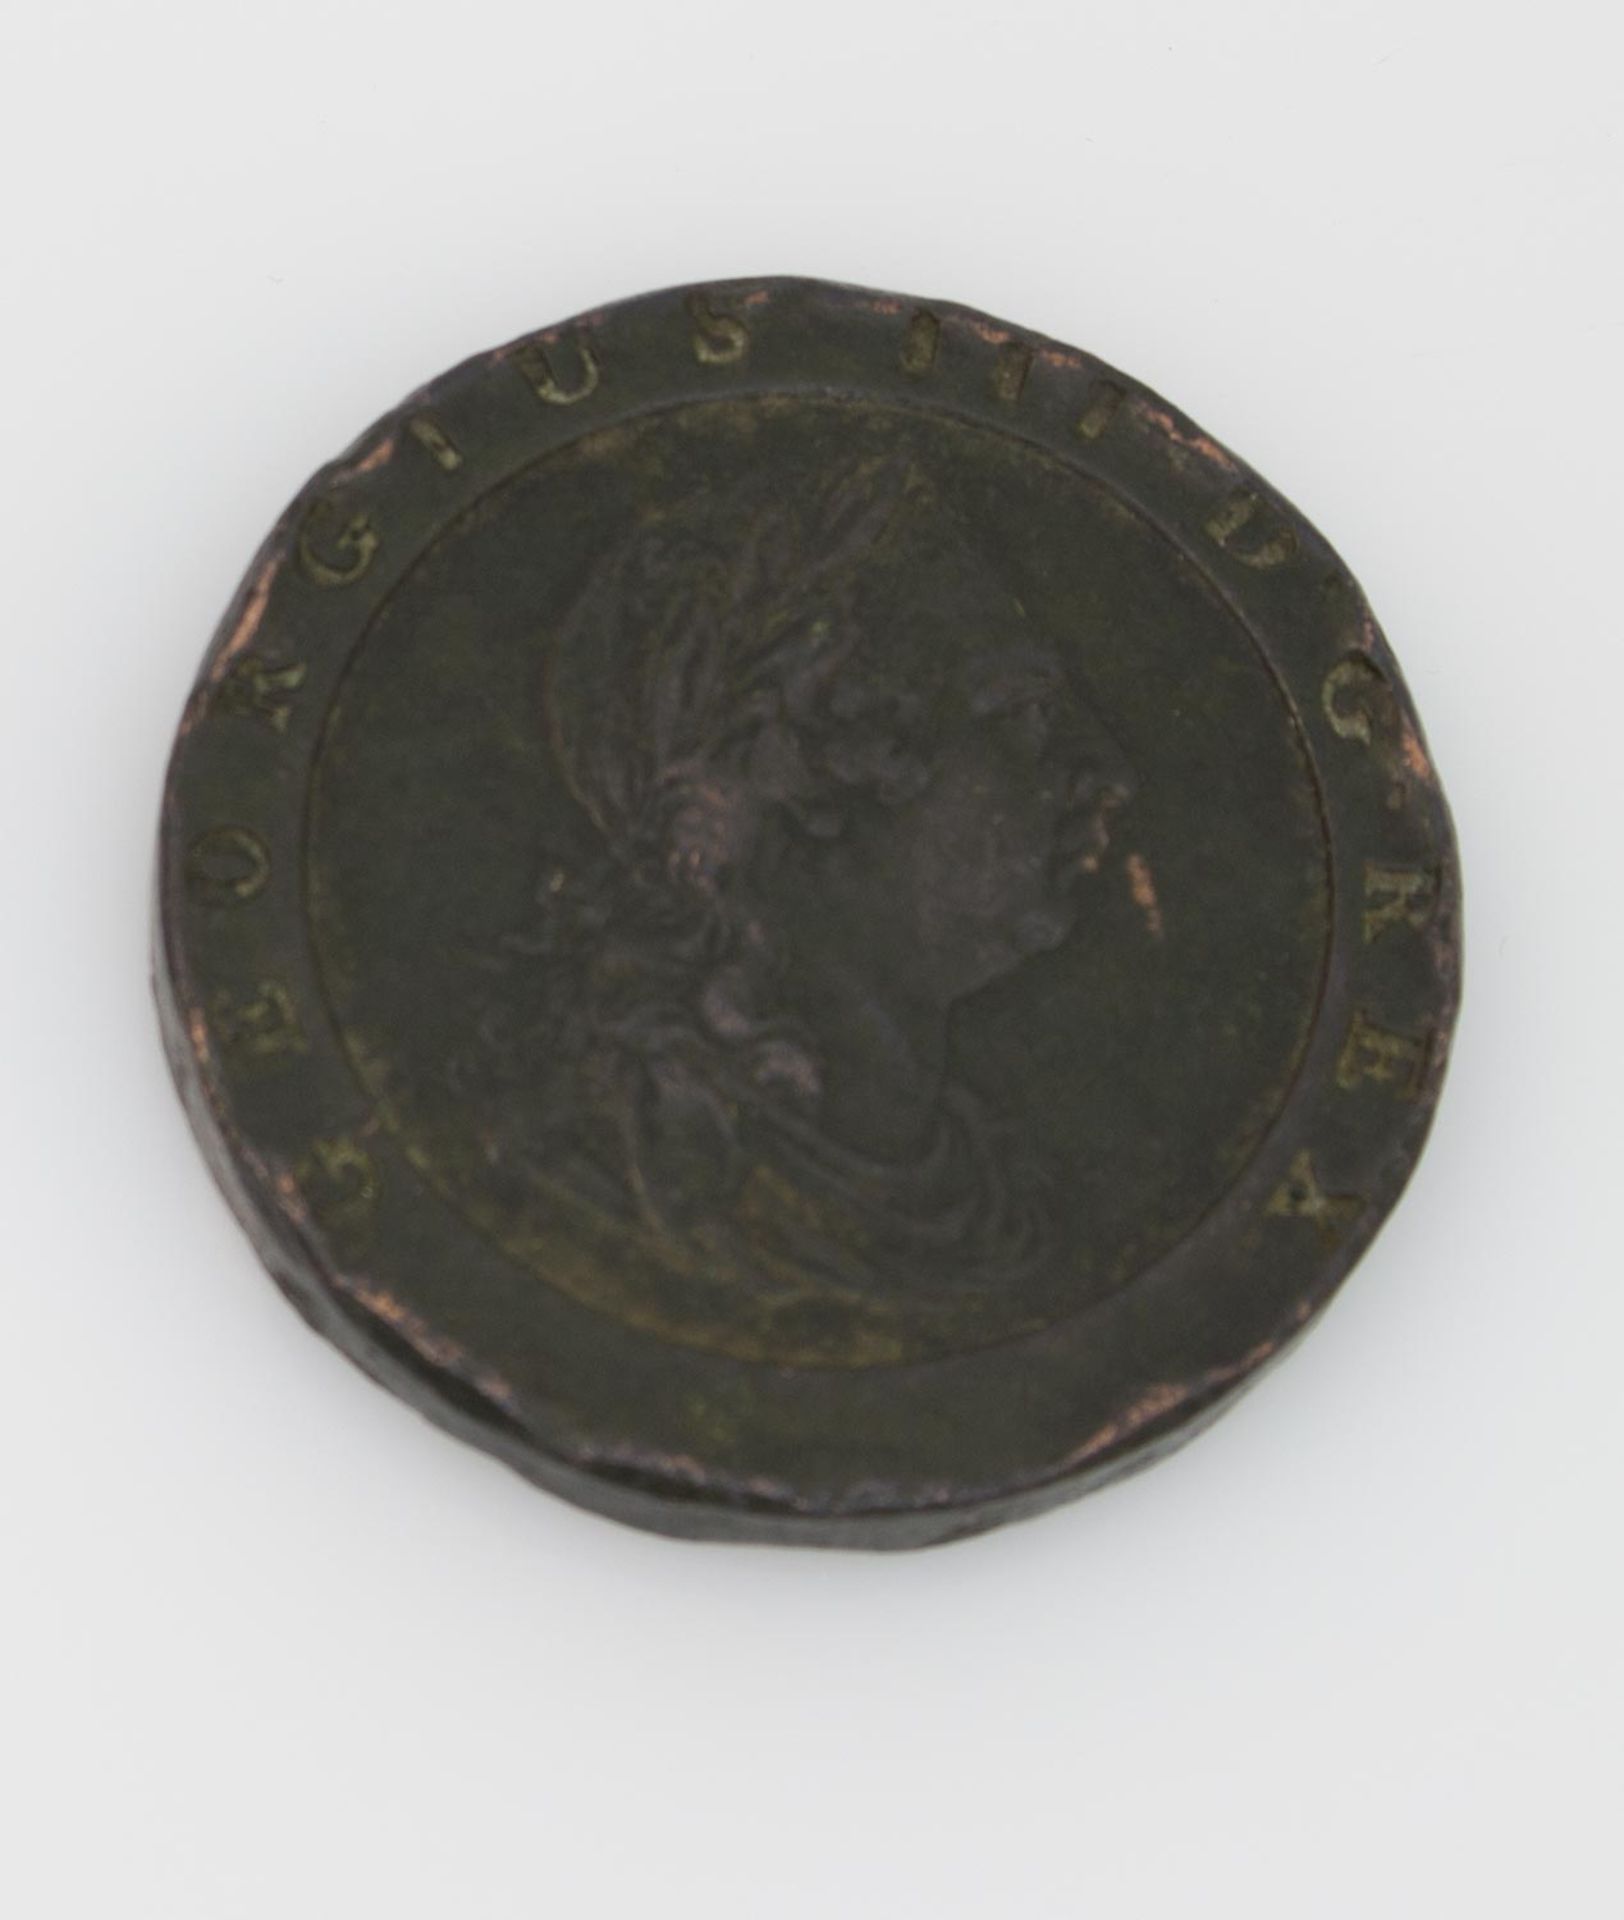 2 Pence England 1797, Georg III., Cartwheel